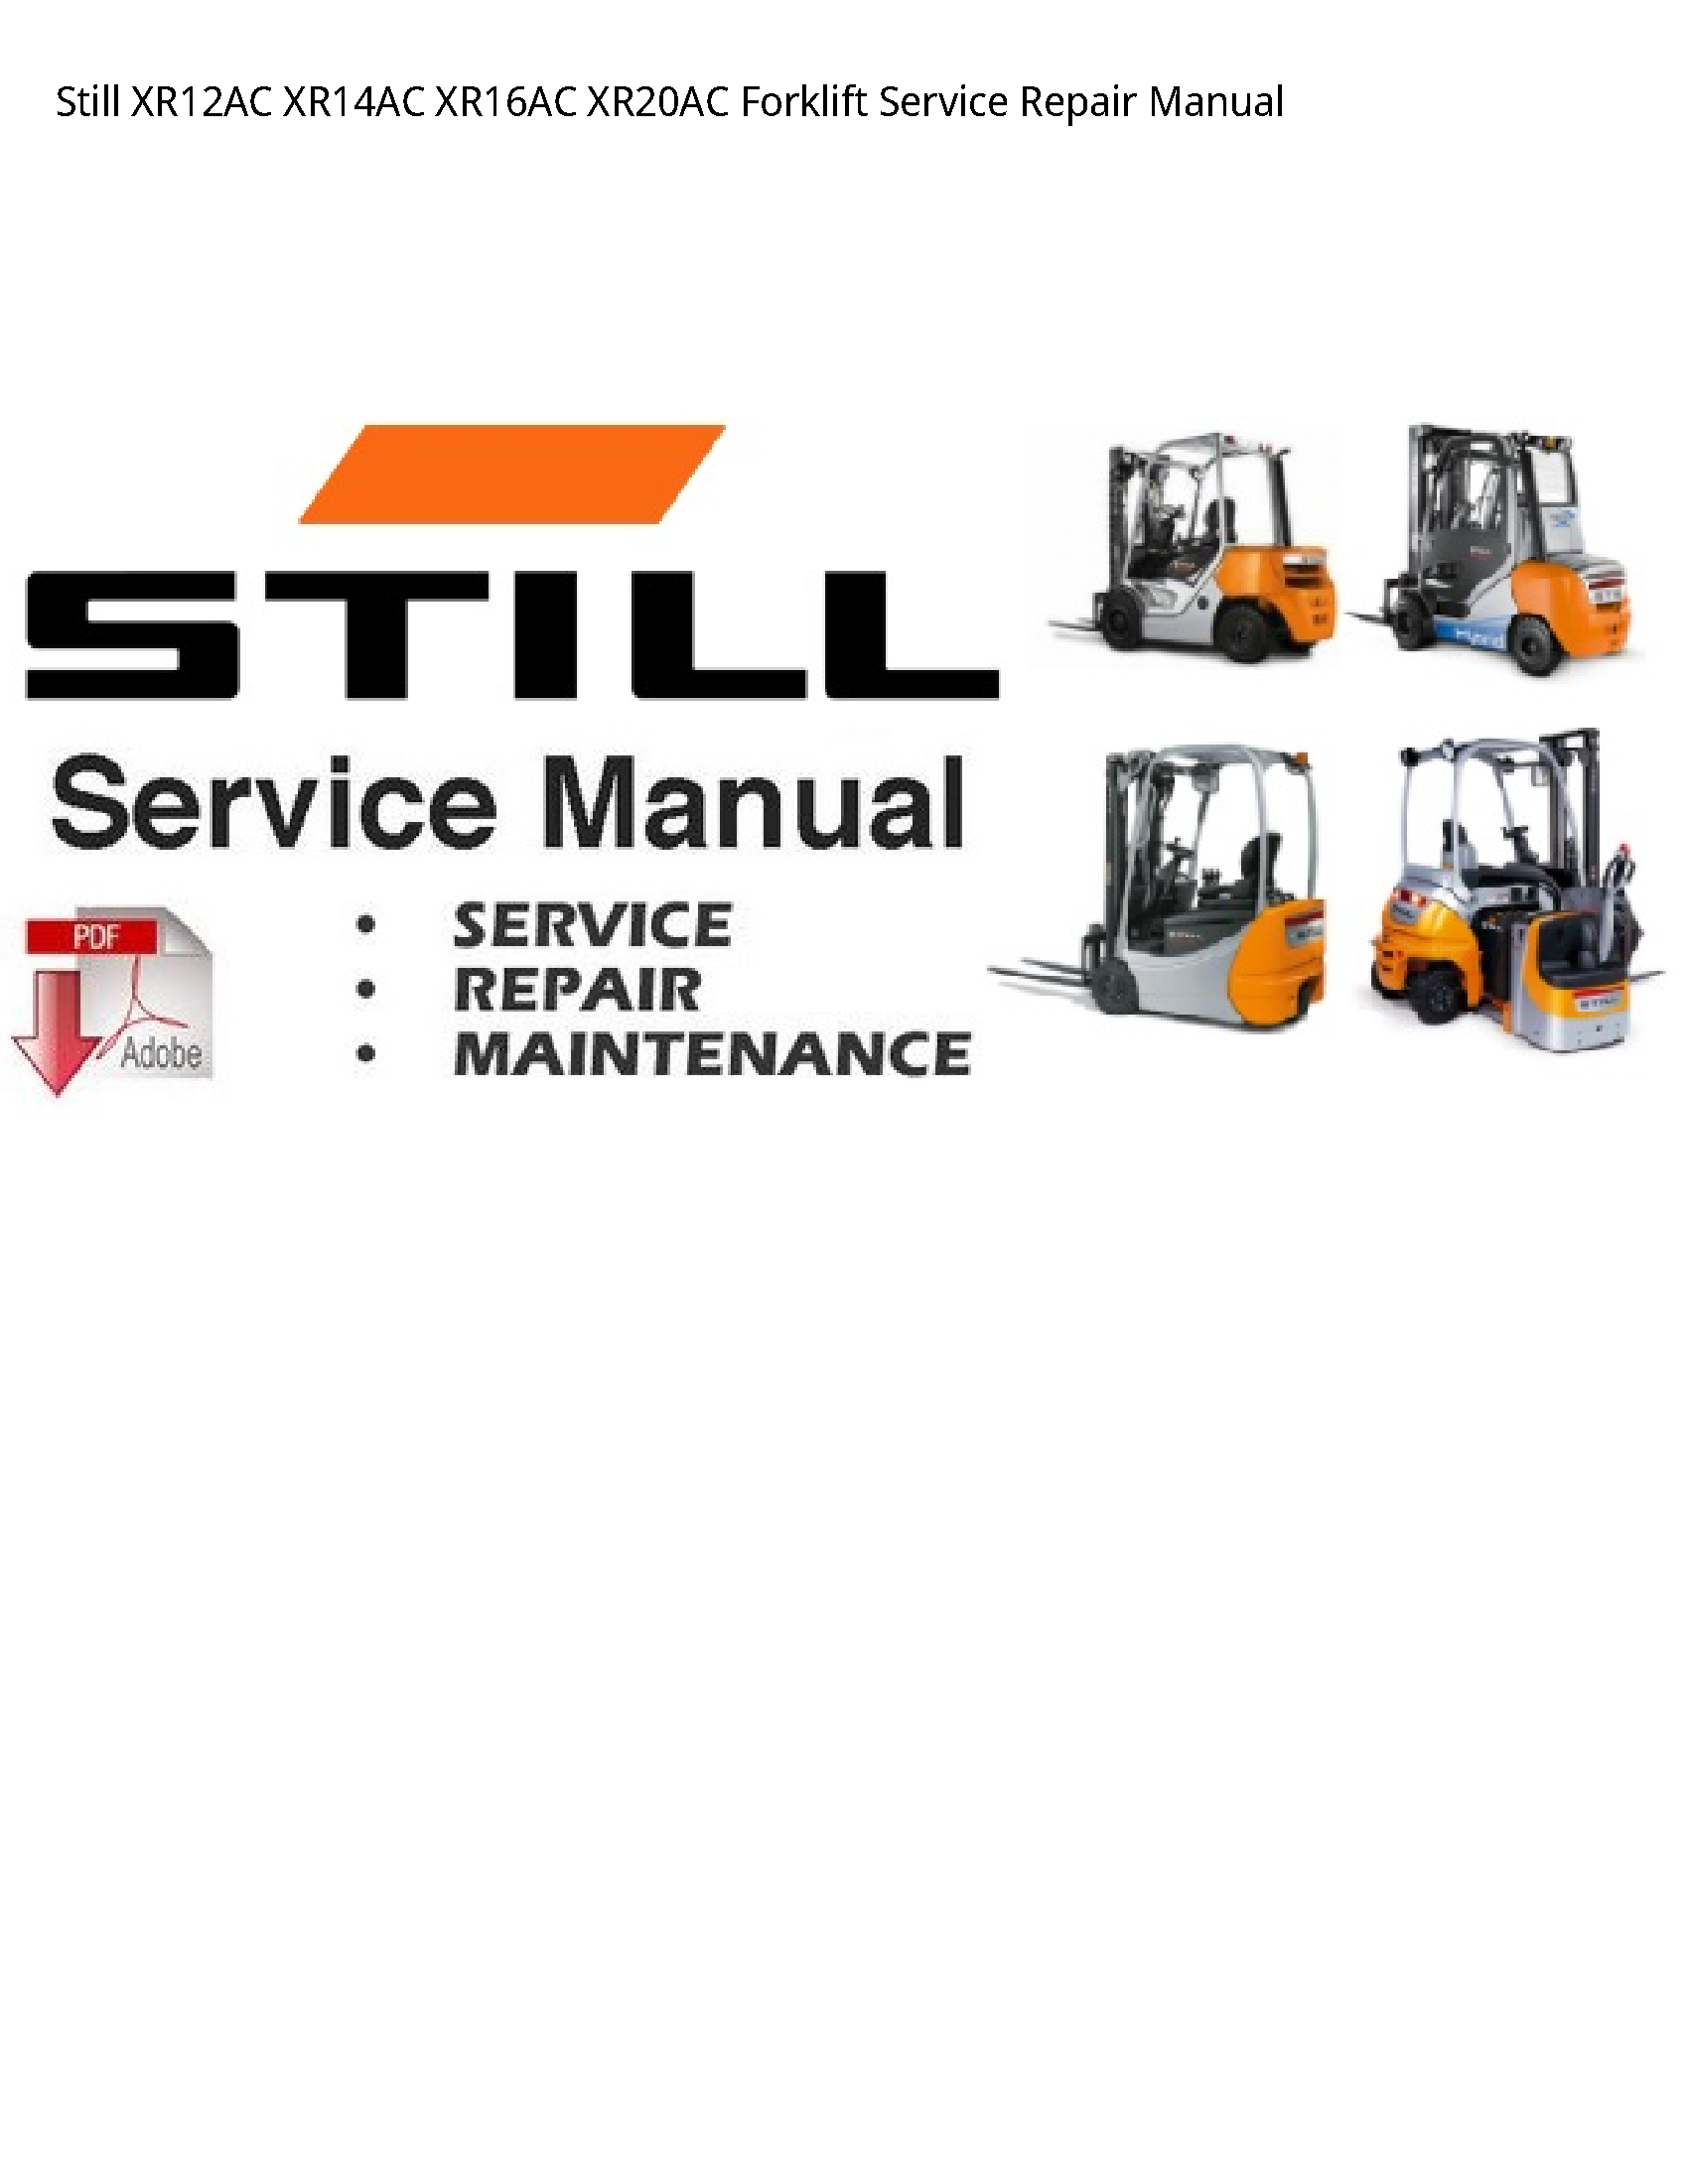 Still XR12AC Forklift manual